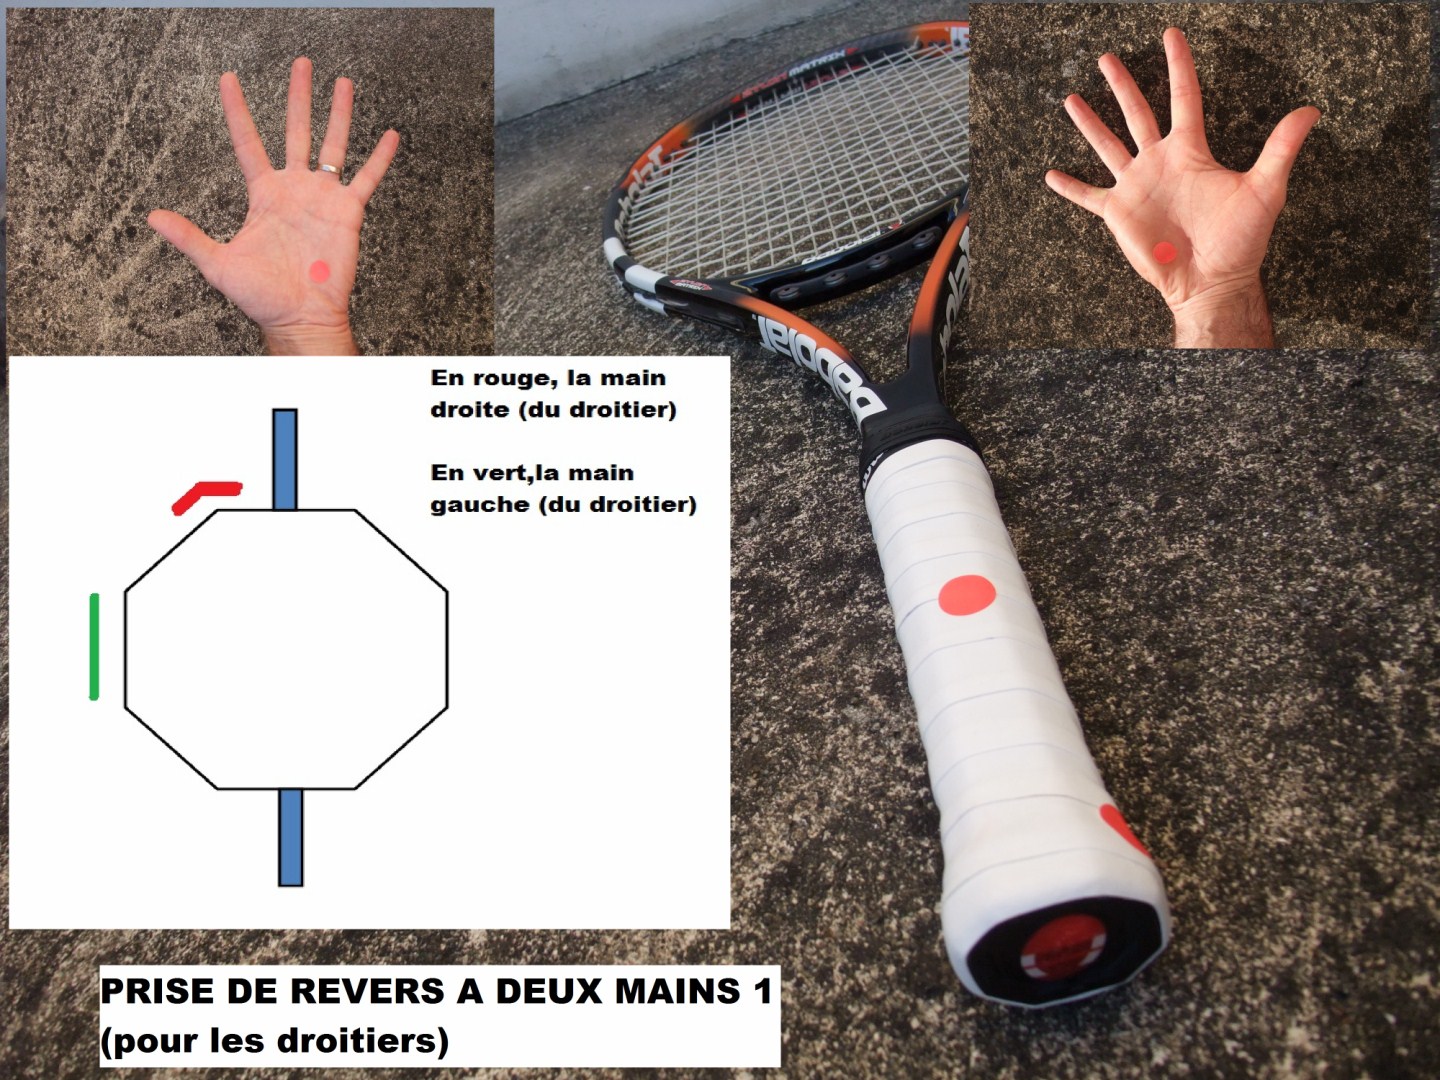 Réduire la taille de manche d'une raquette de tennis - Extreme Tennis